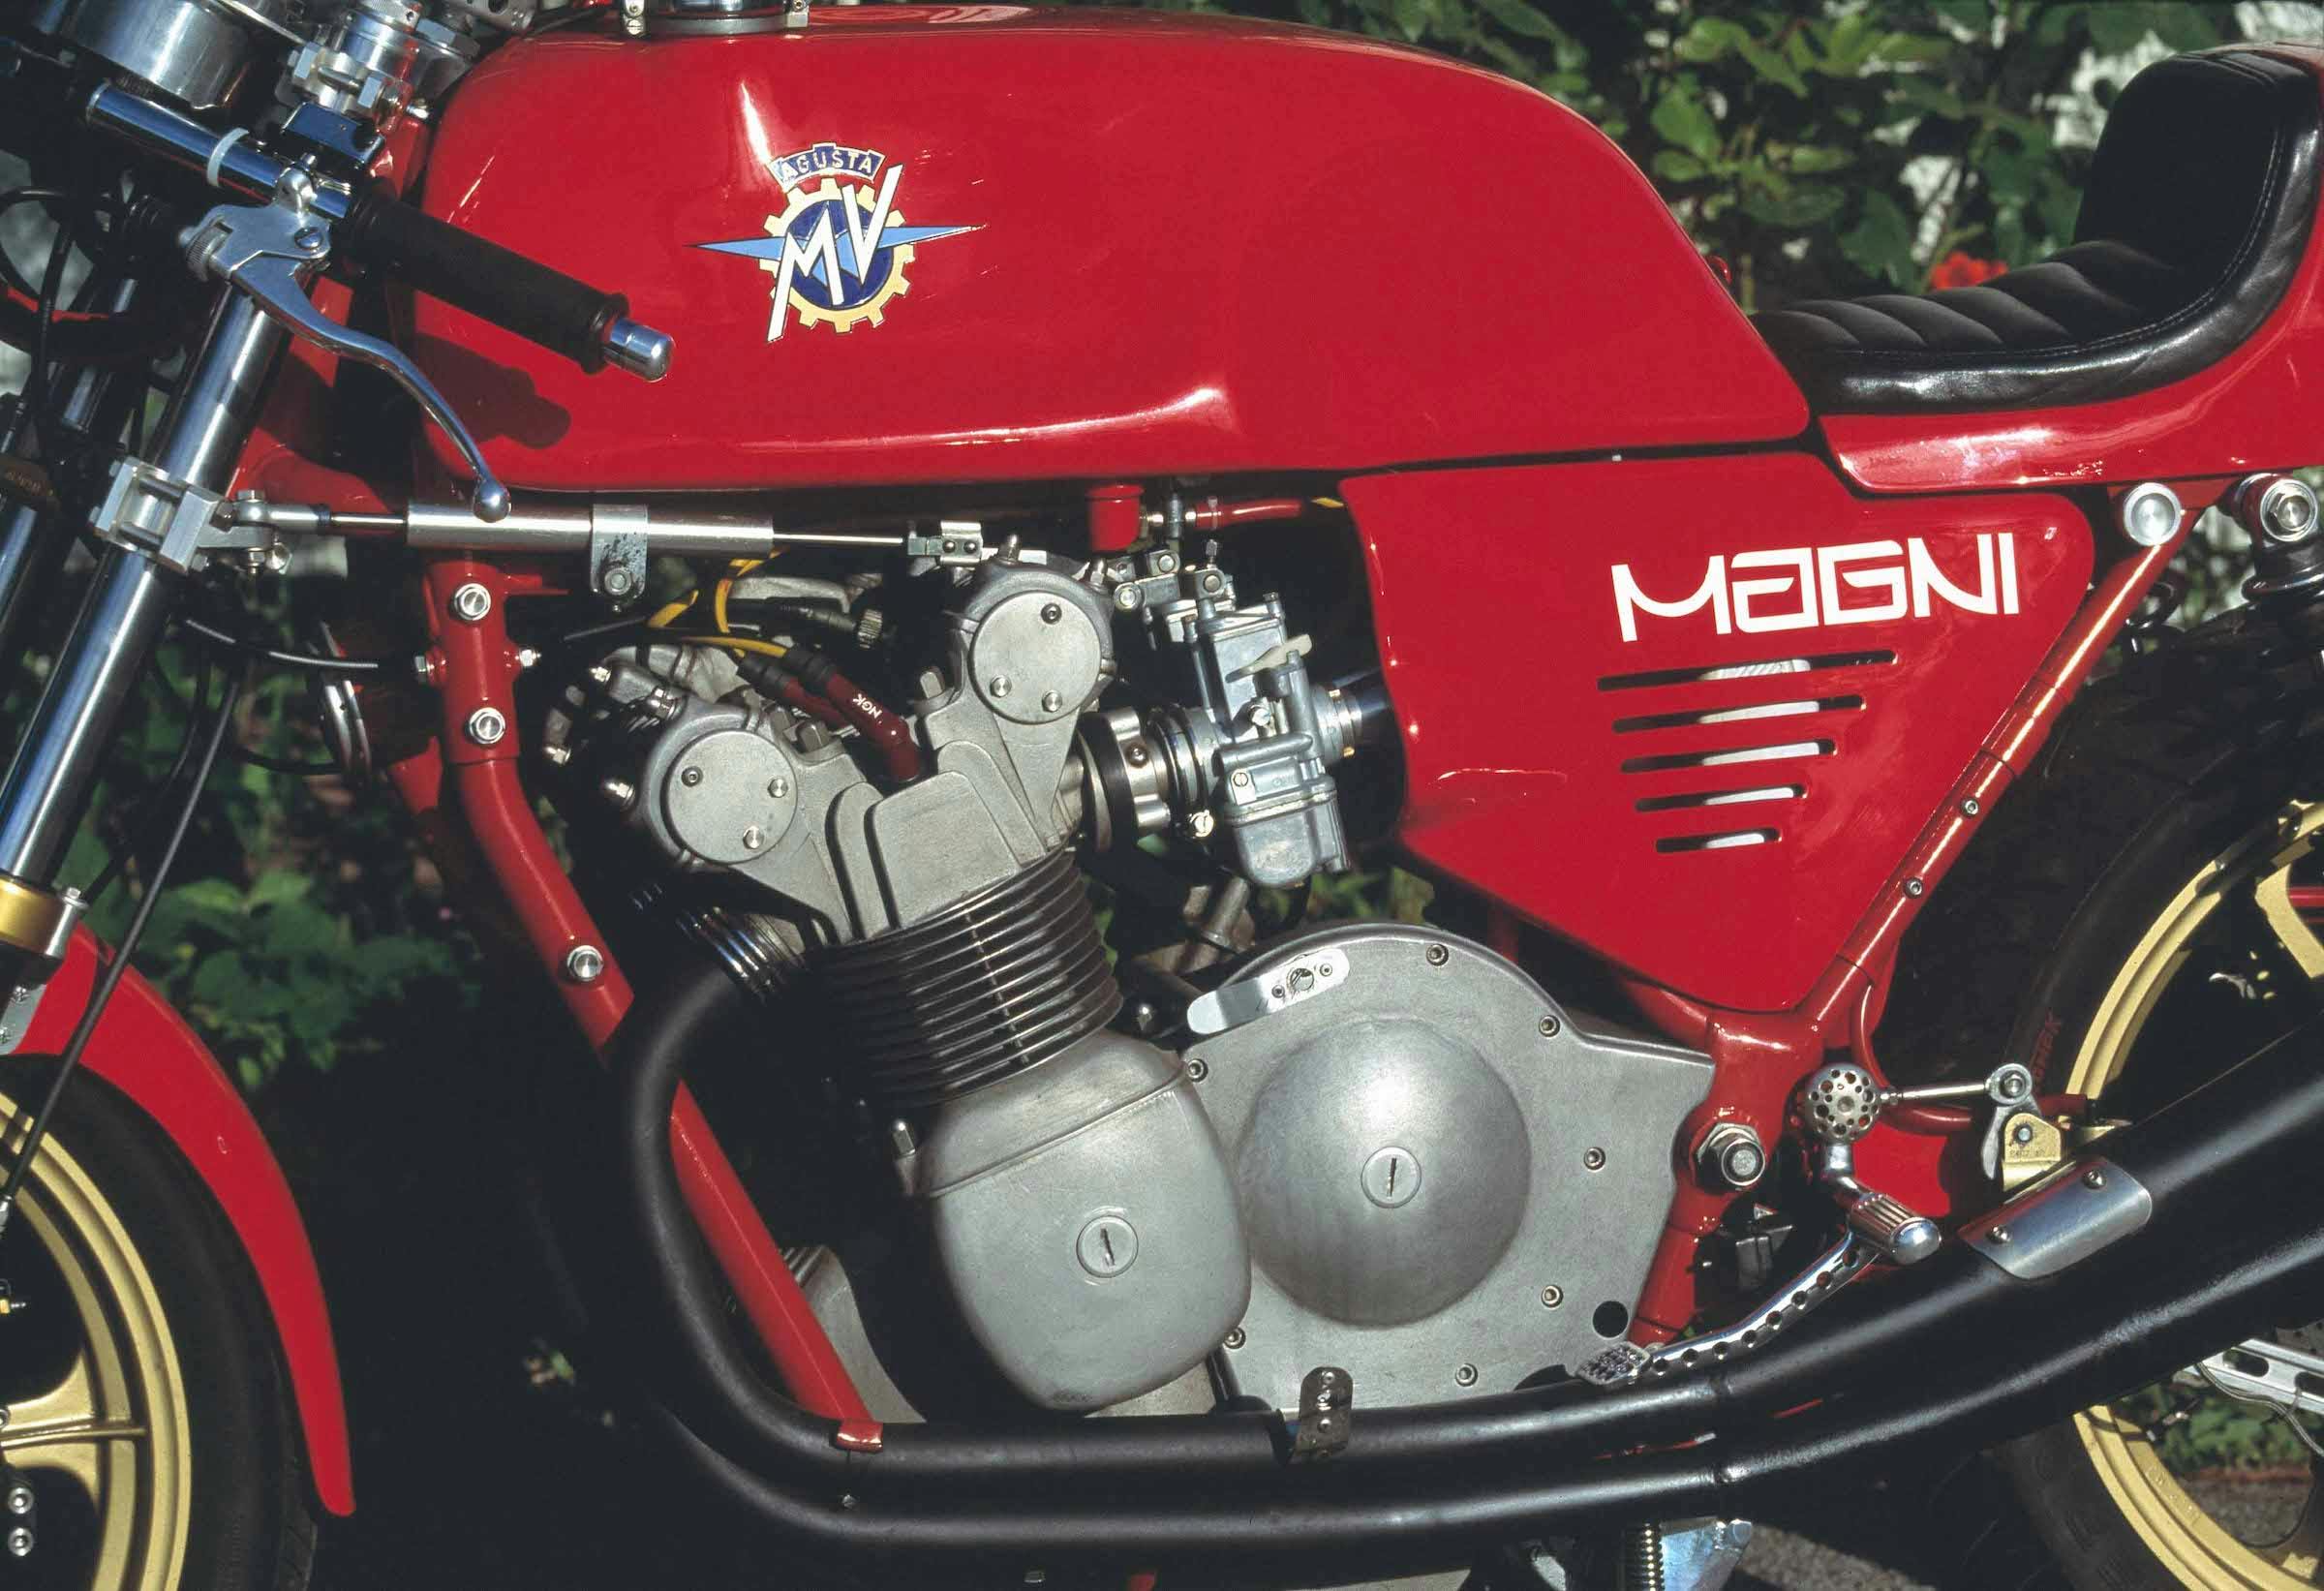 MV Agusta Magni engine